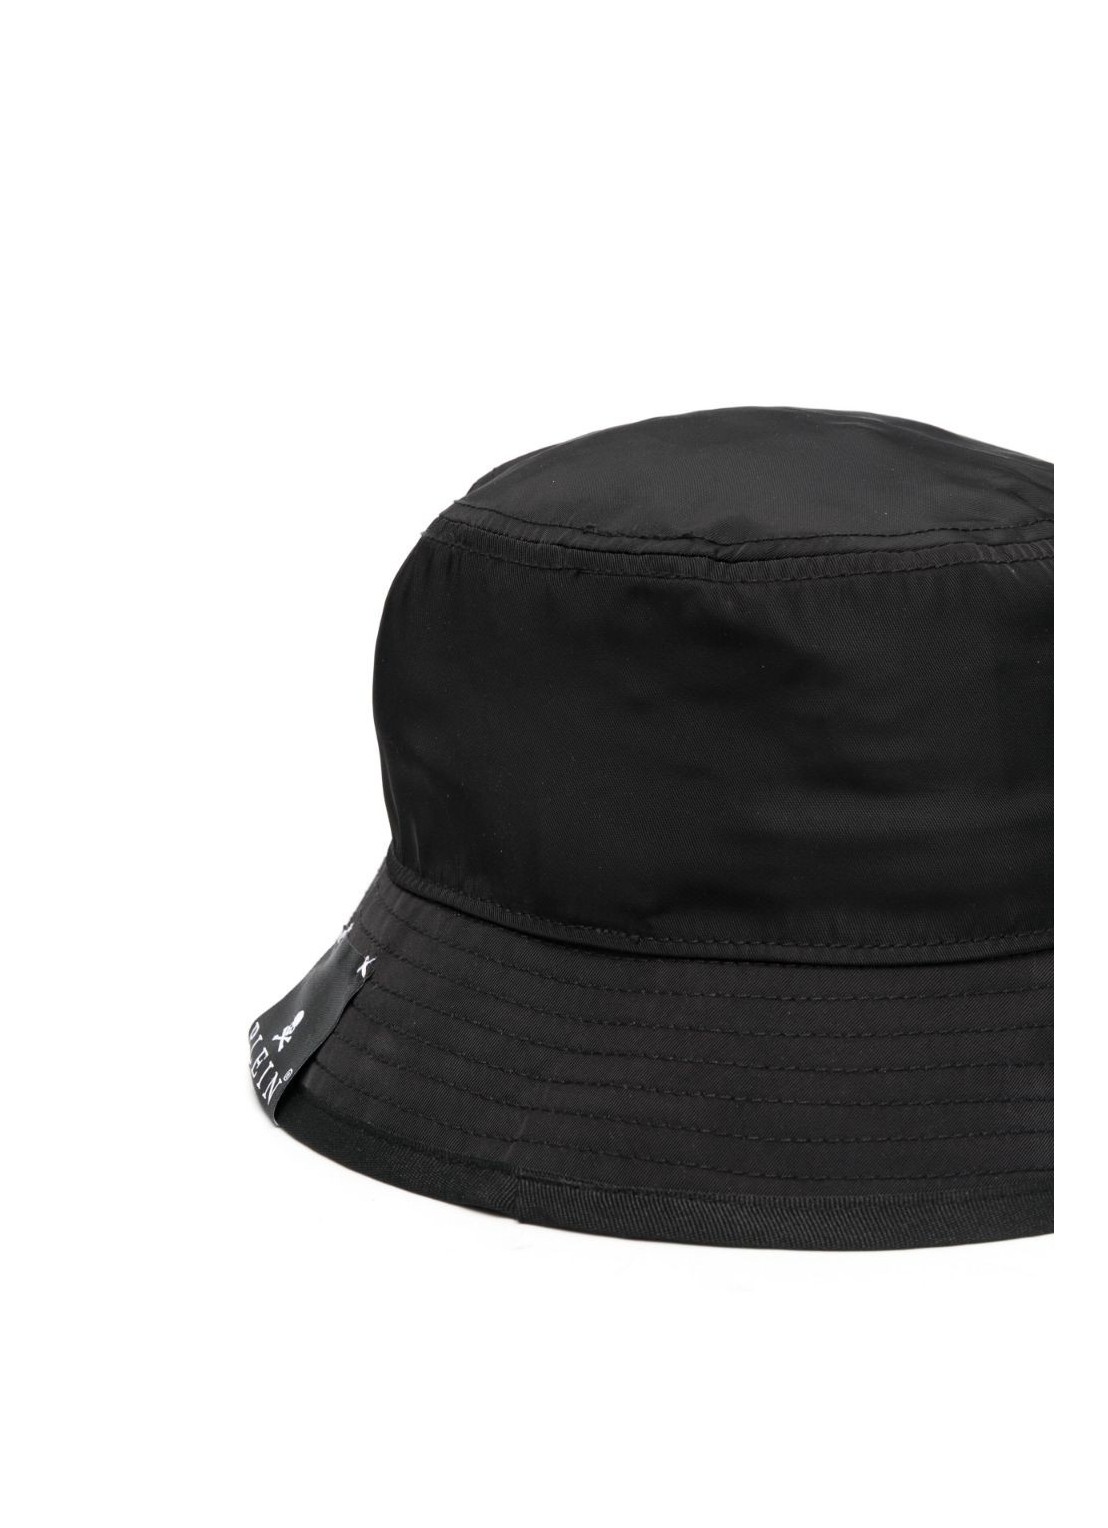 philipp plein bucket hat gothic plein - facauac0433pny002n 02 Talla T/U